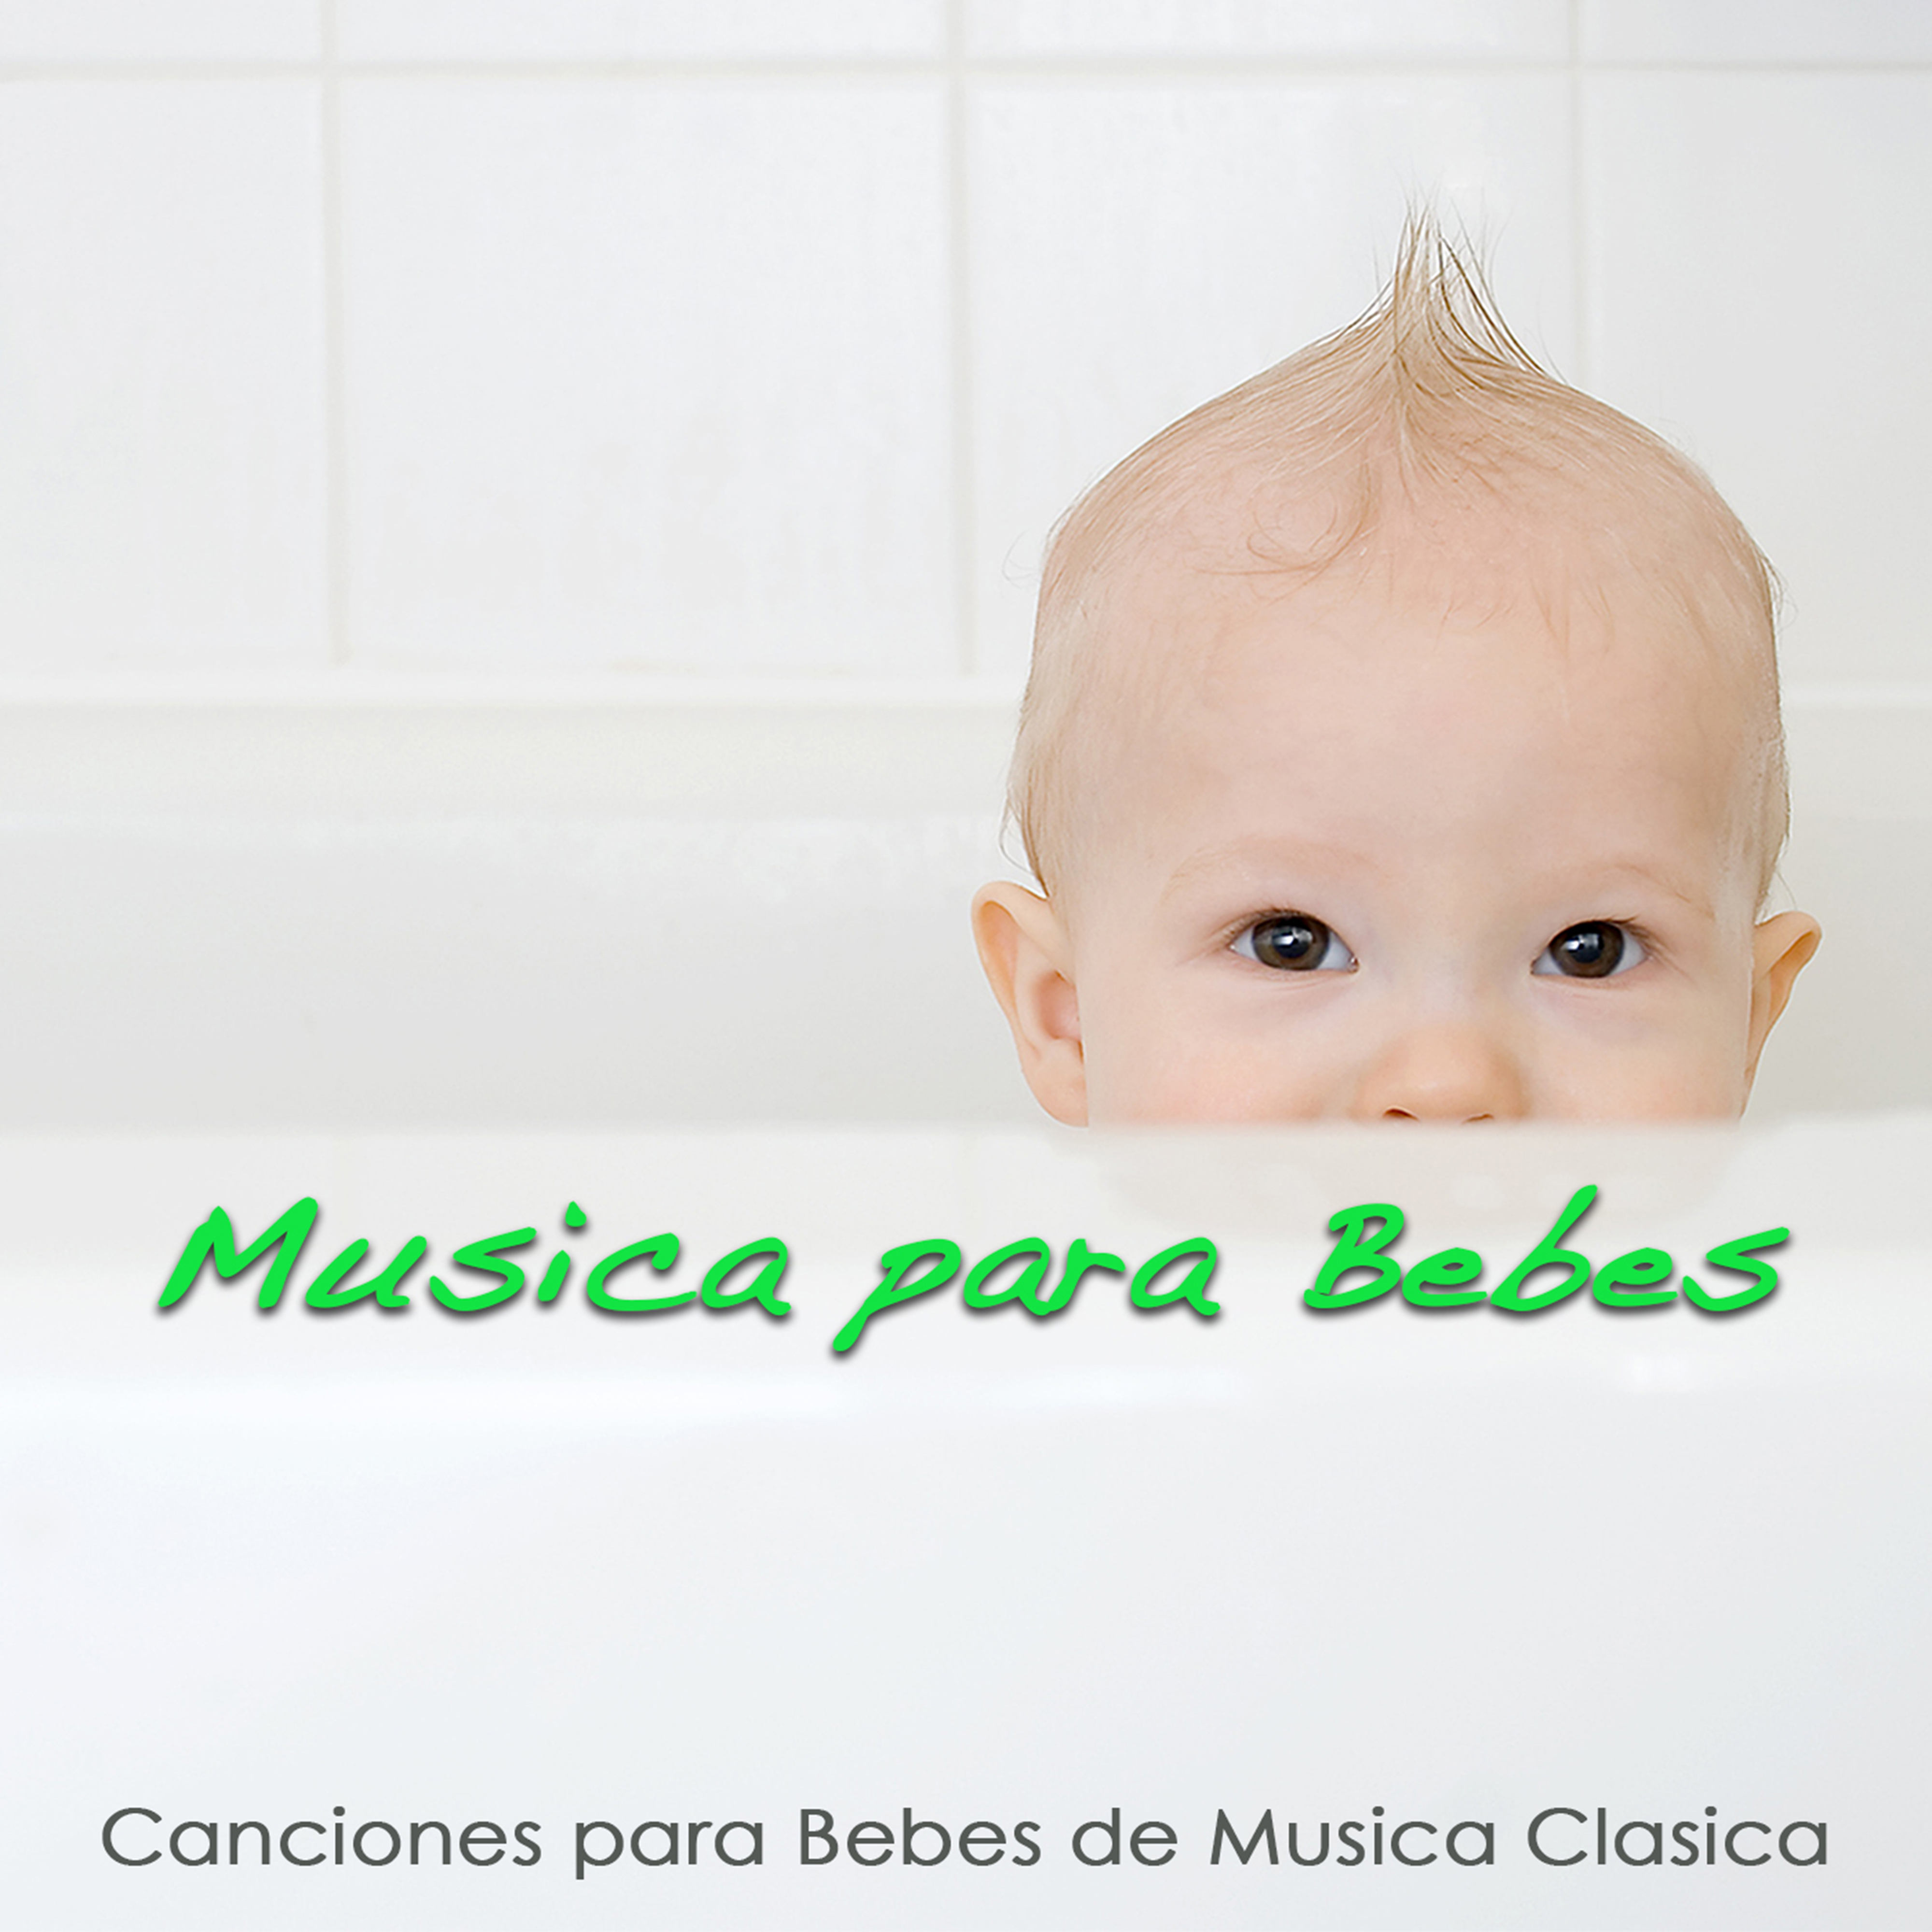 Mu sica para Bebes  Canciones para Bebes de Mu sica Cla sica Con Sonidos de la Naturaleza para Relajar a Tu Bebe